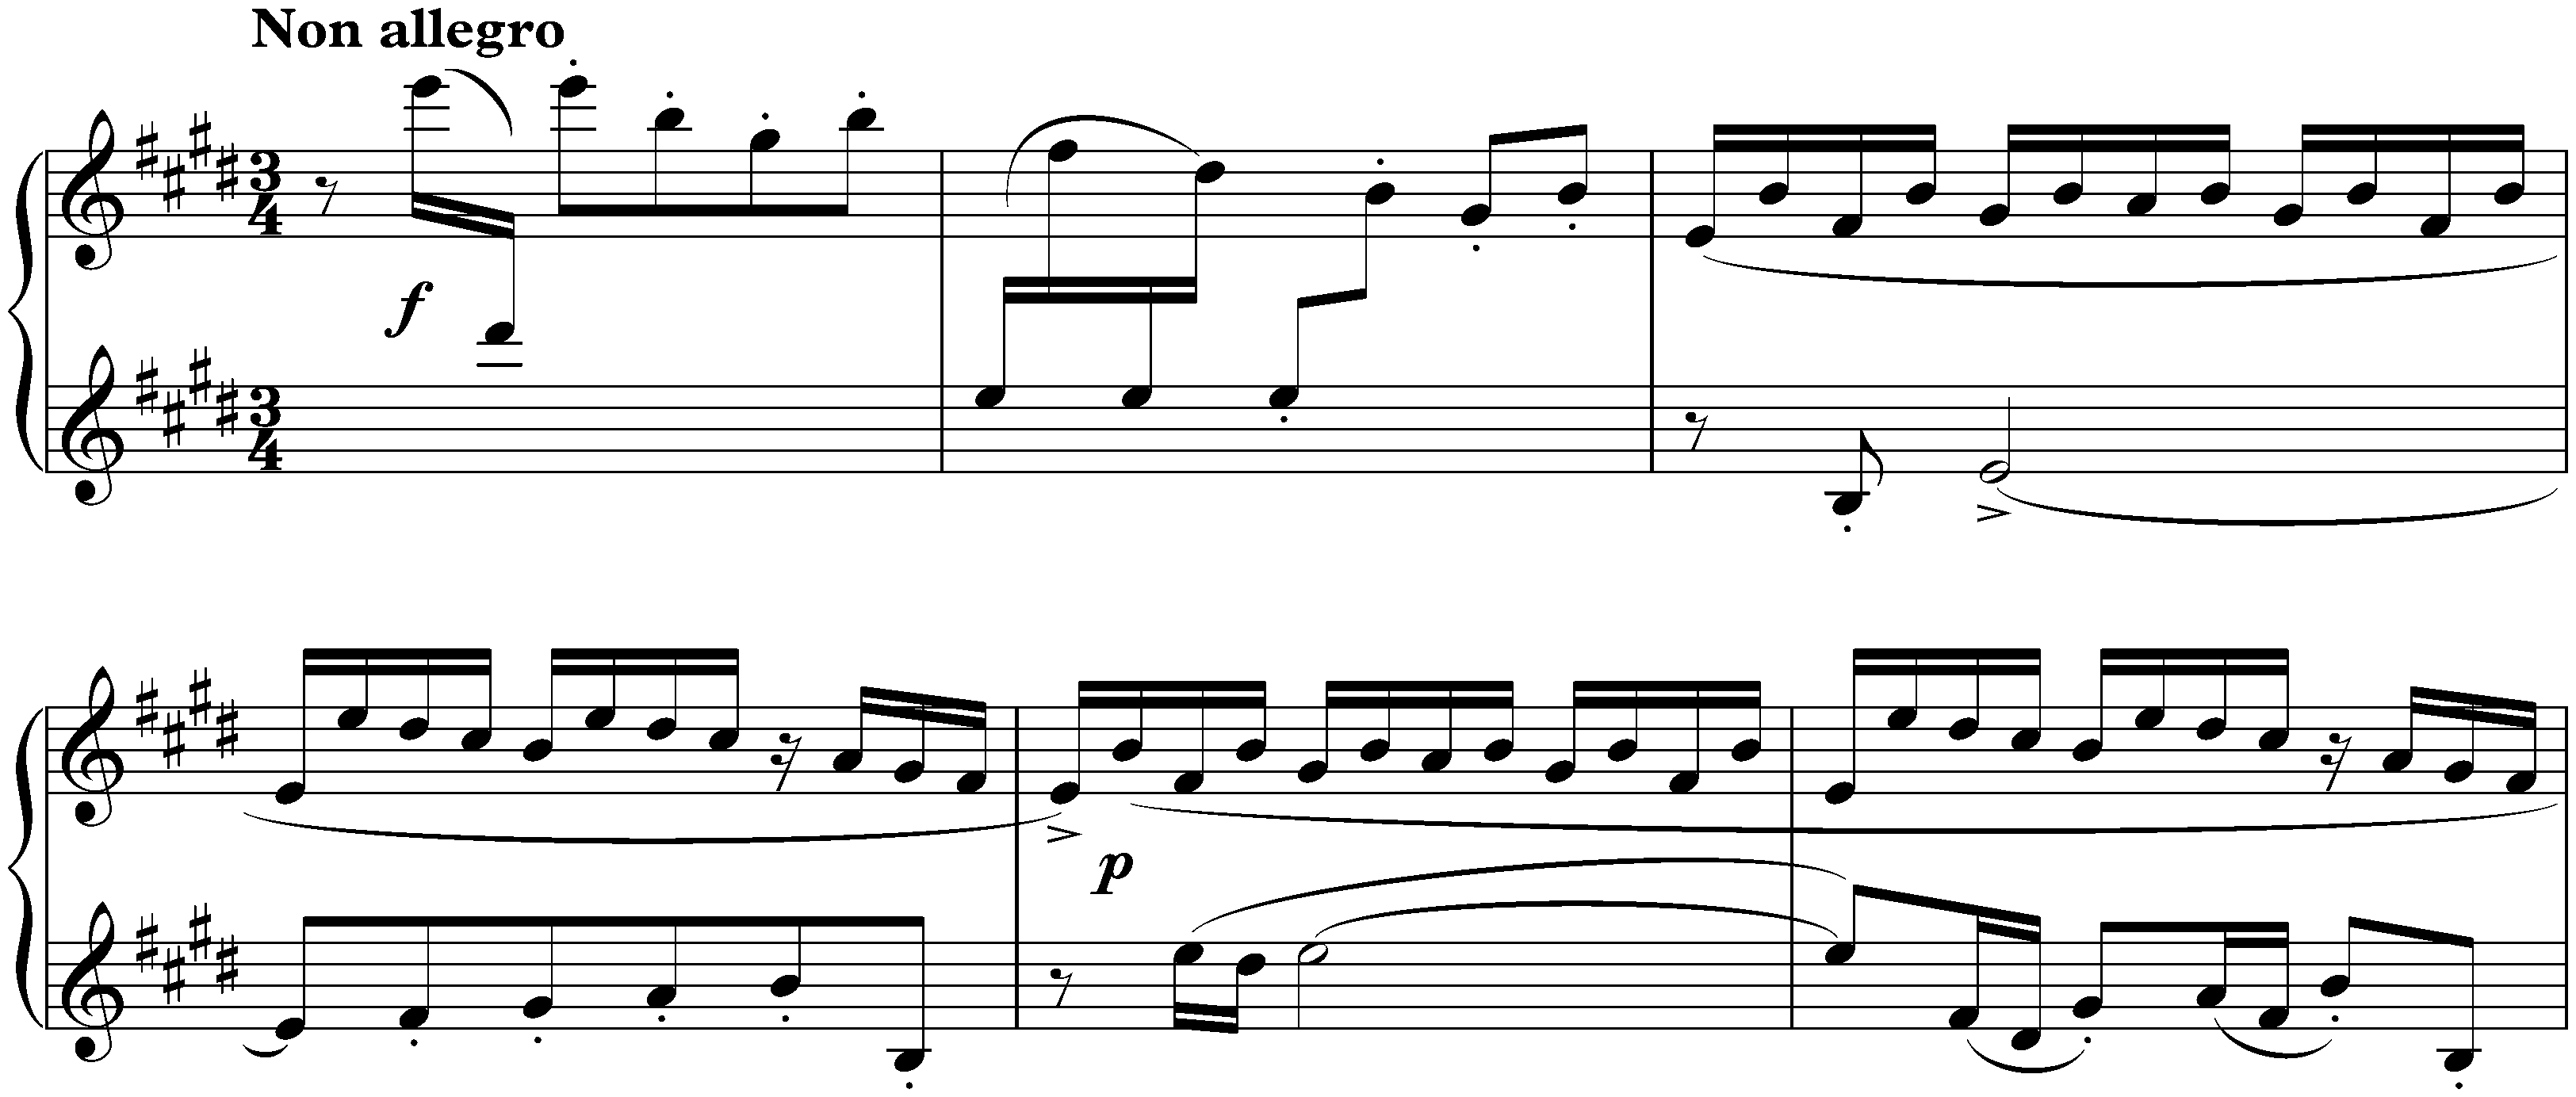 Prélude, Gavotte and Gigue from the Violin Partita in E major (Johann Sebastian Bach); 1. Prélude